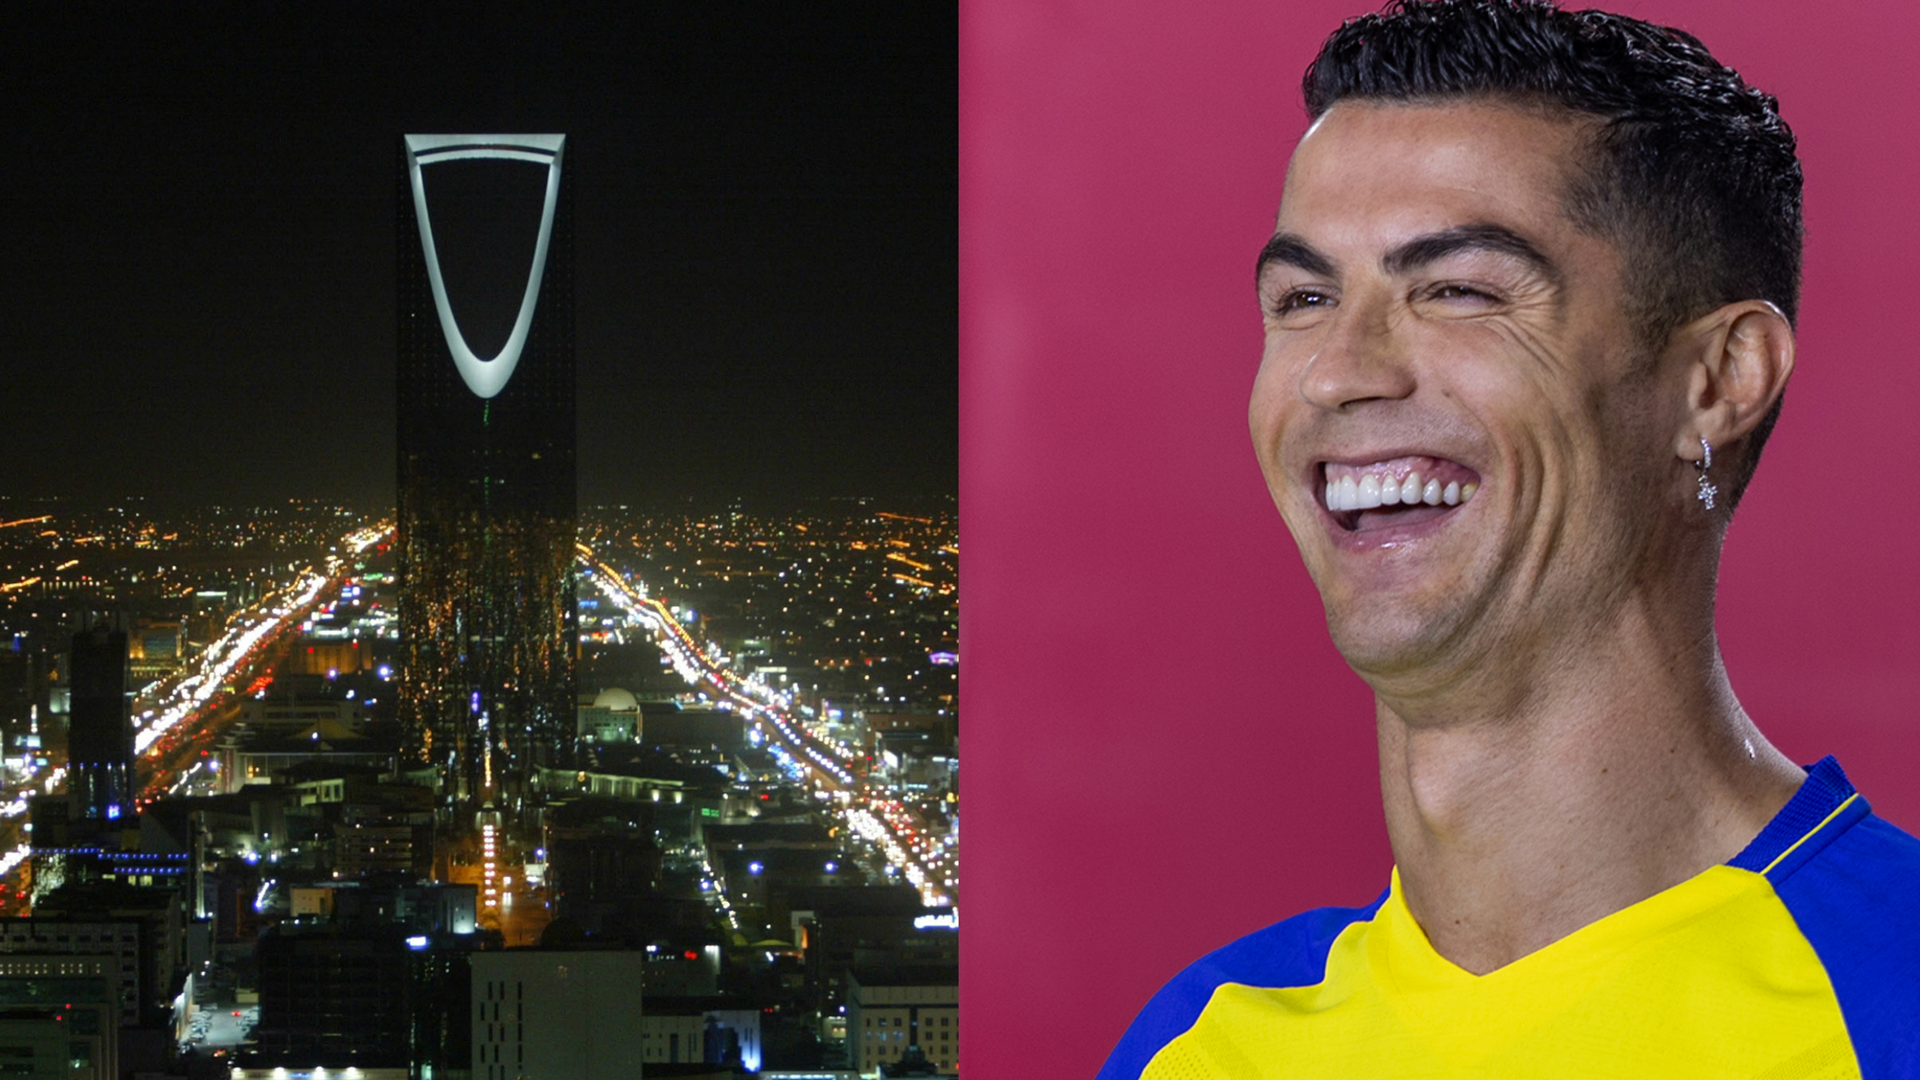 Cristiano Ronaldo in Saudi-Arabien: Mitspieler von Al-Nassr verteidigt luxuriösen Lebensstil von CR7